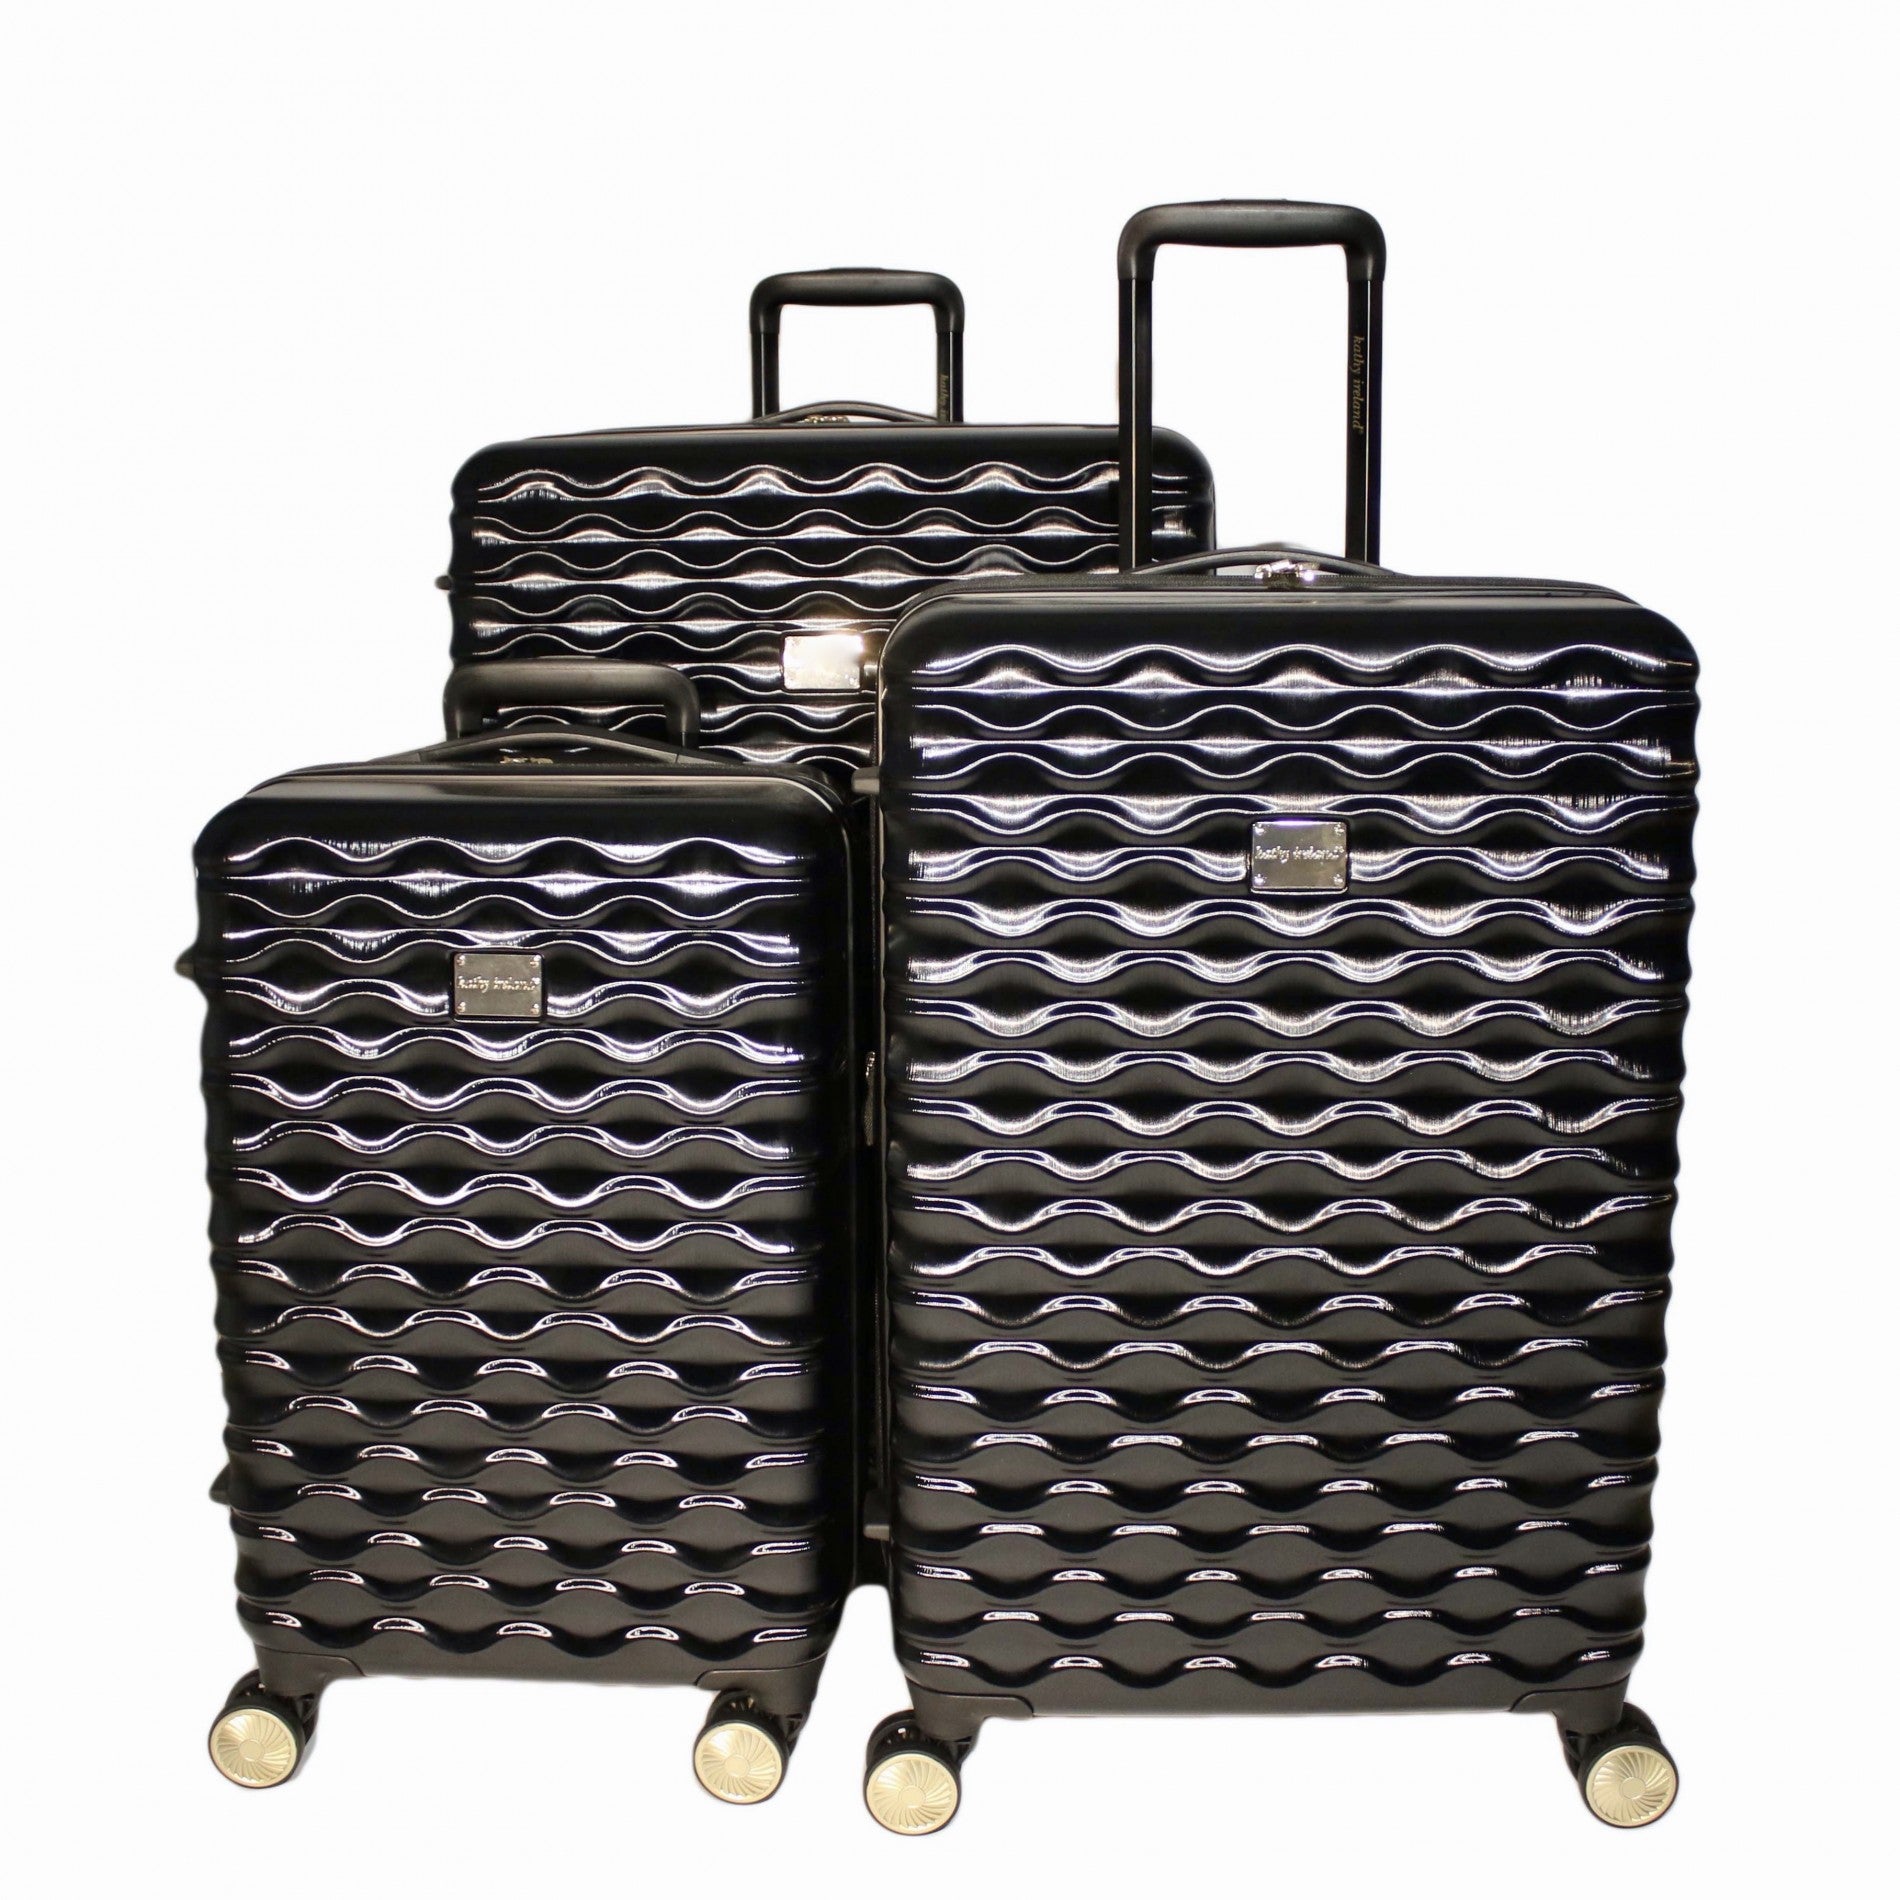 Kathy Ireland Maisy 3-Piece Hardside Luggage Set